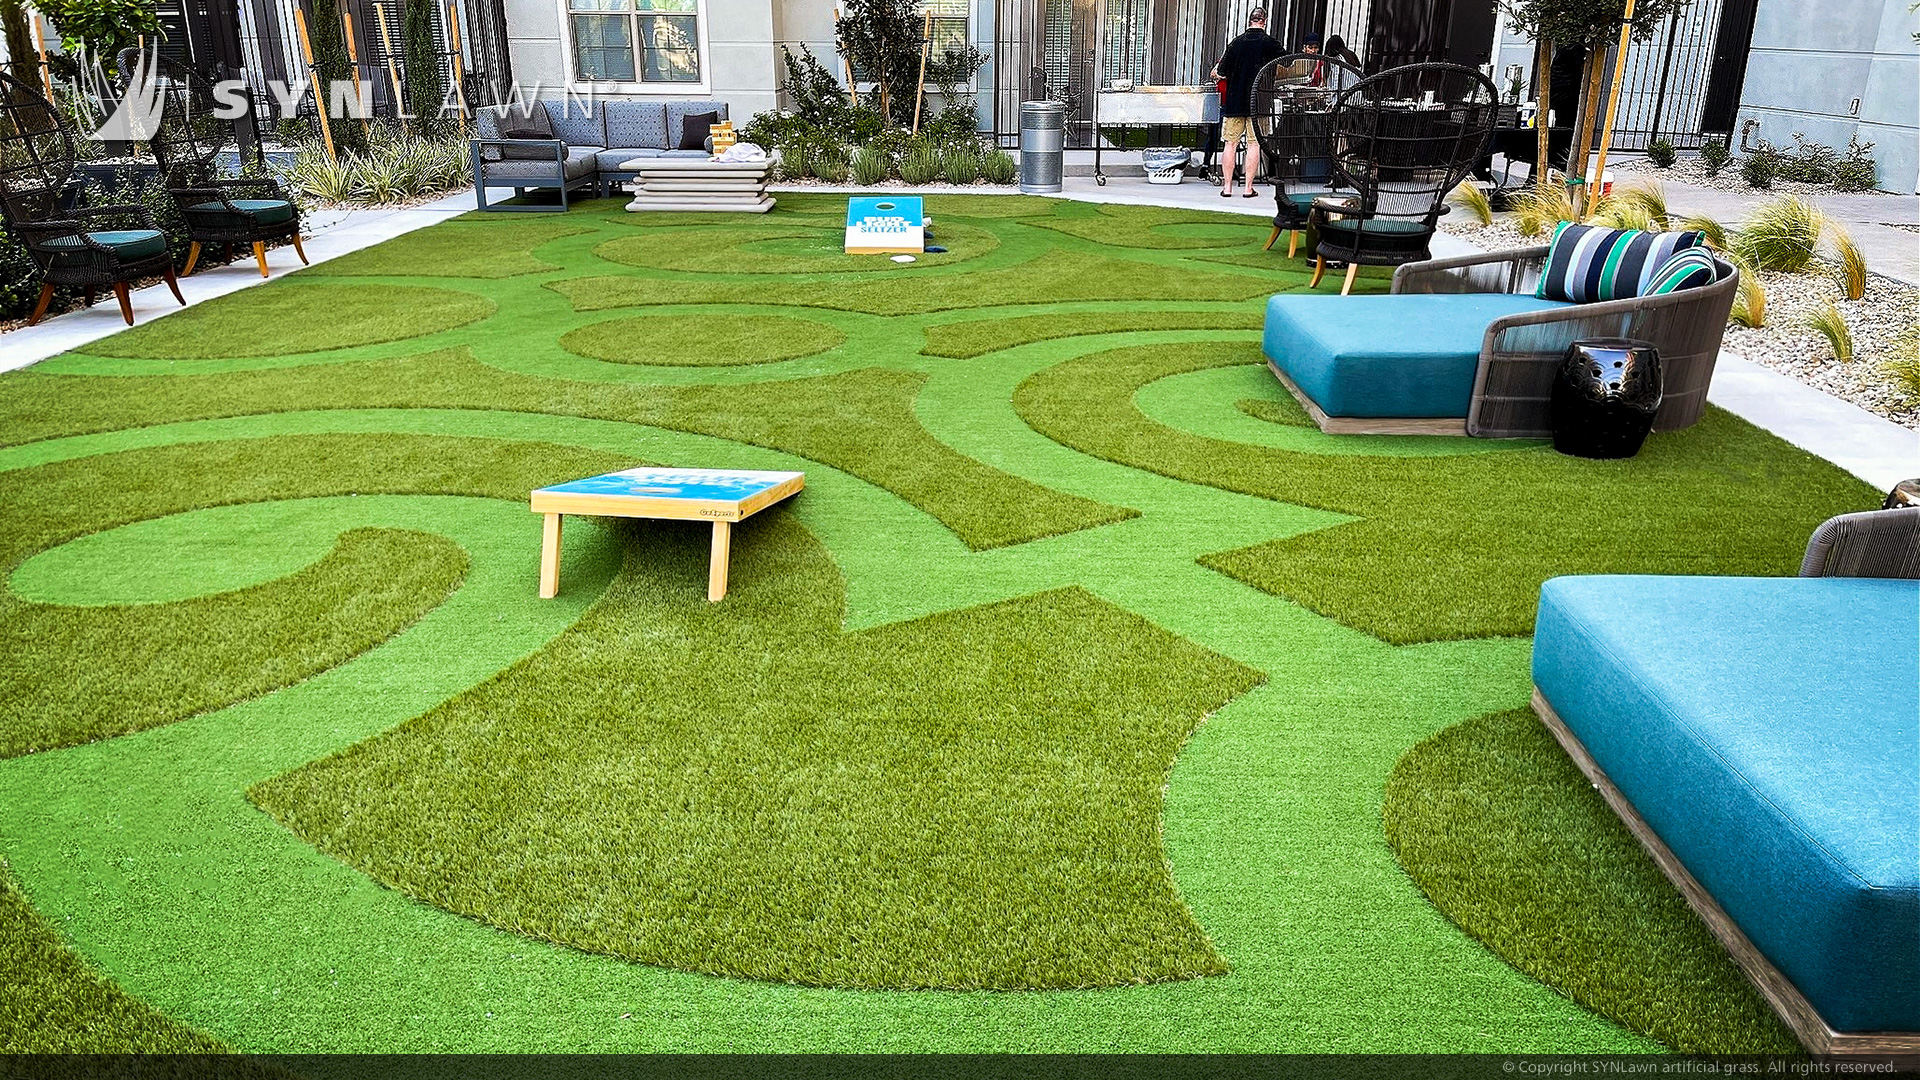 Las Vegas Luxury Apartments aggiunge un cortile in erba sintetica progettato su misura